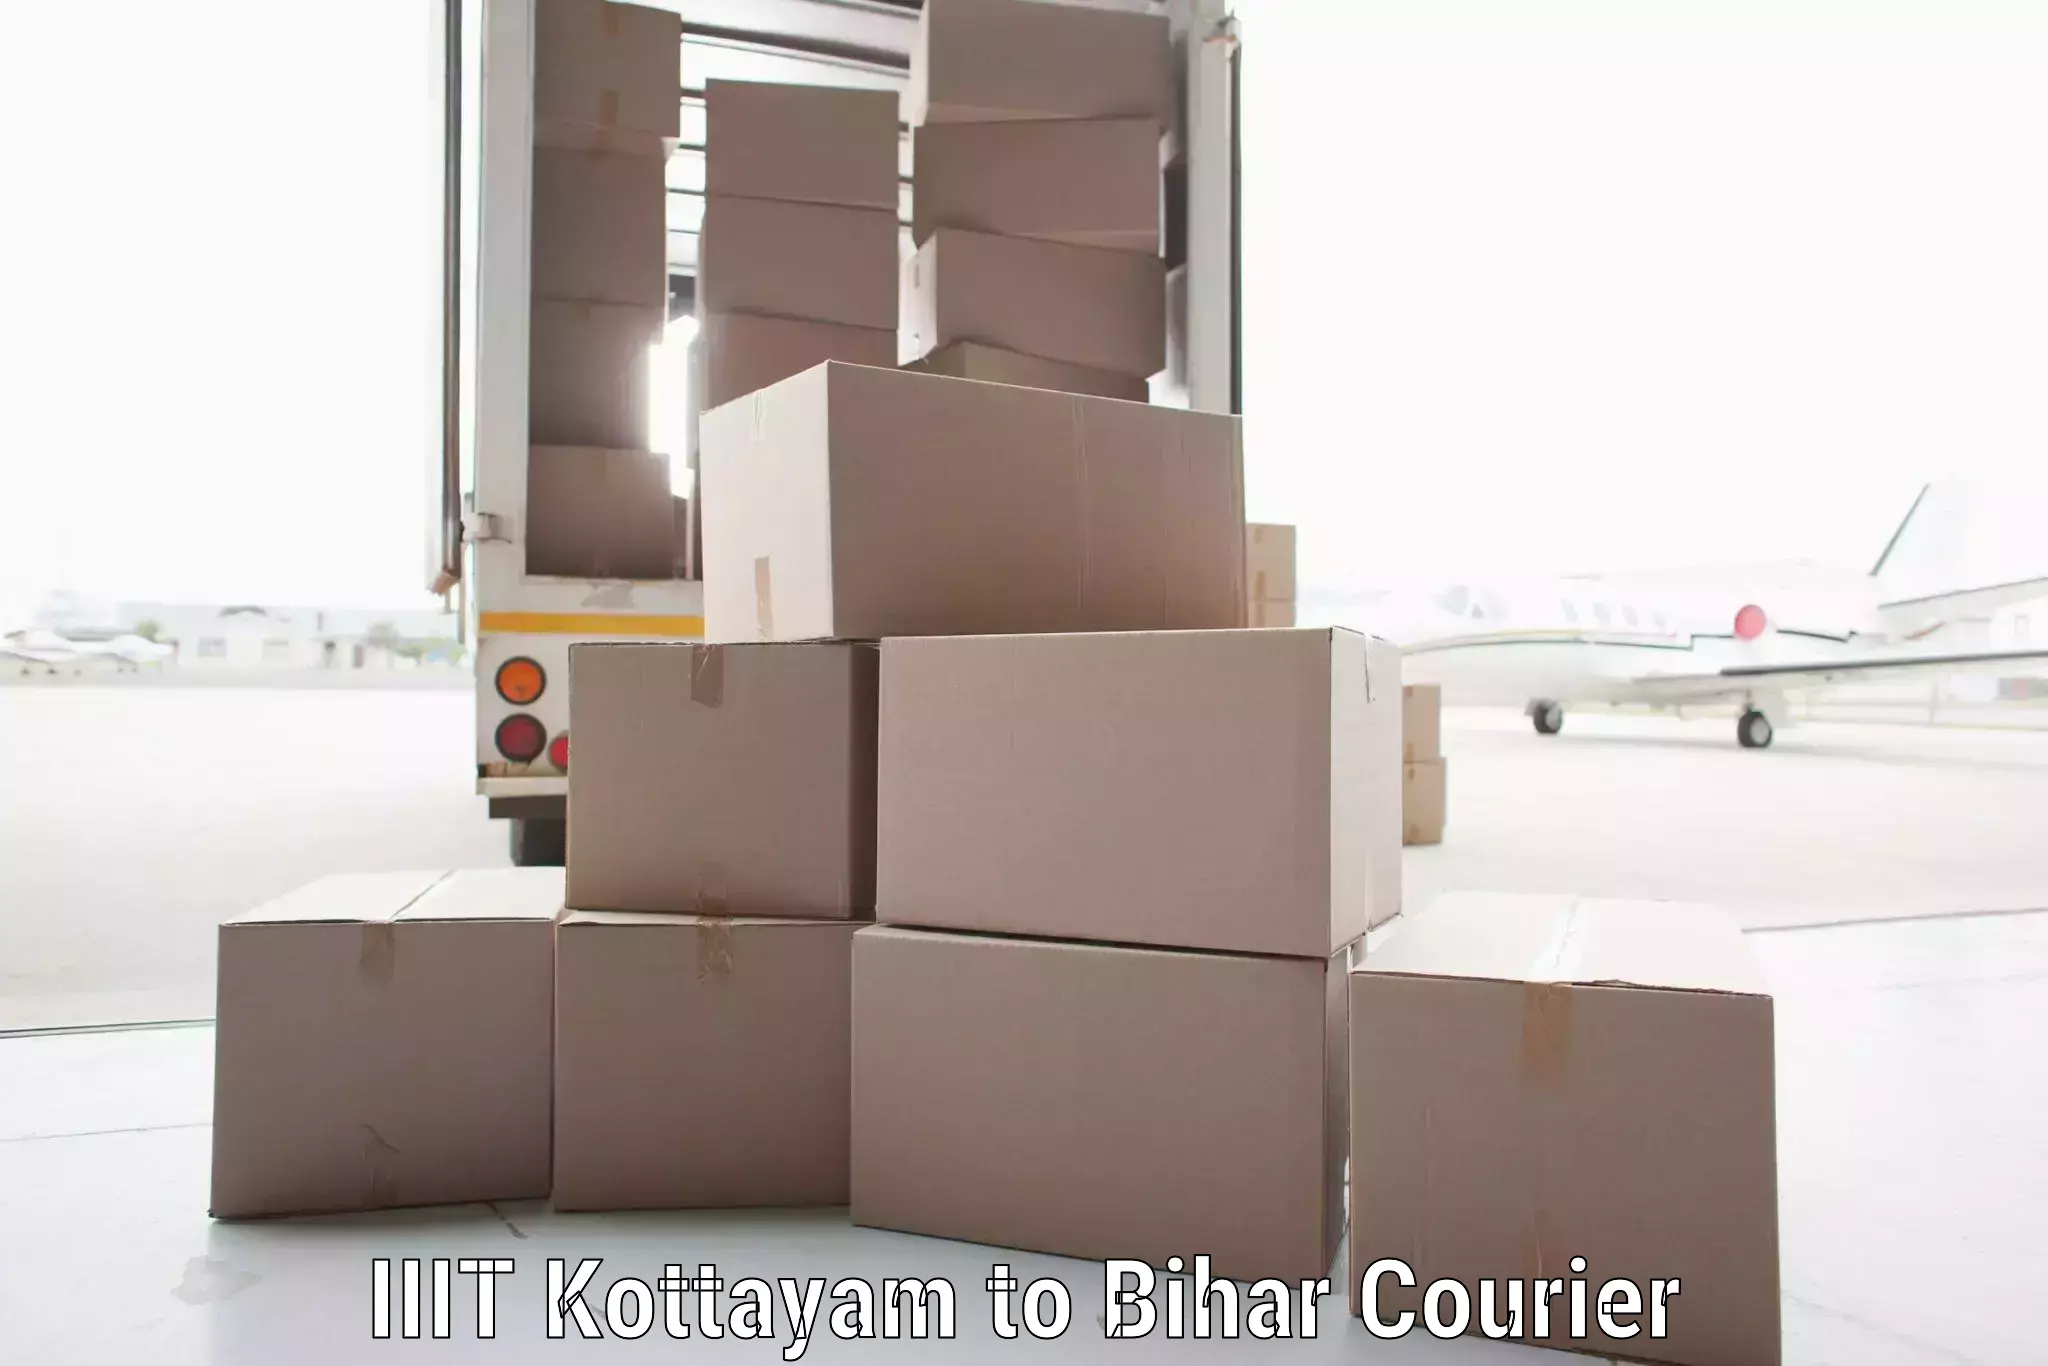 Professional parcel services IIIT Kottayam to Bihar